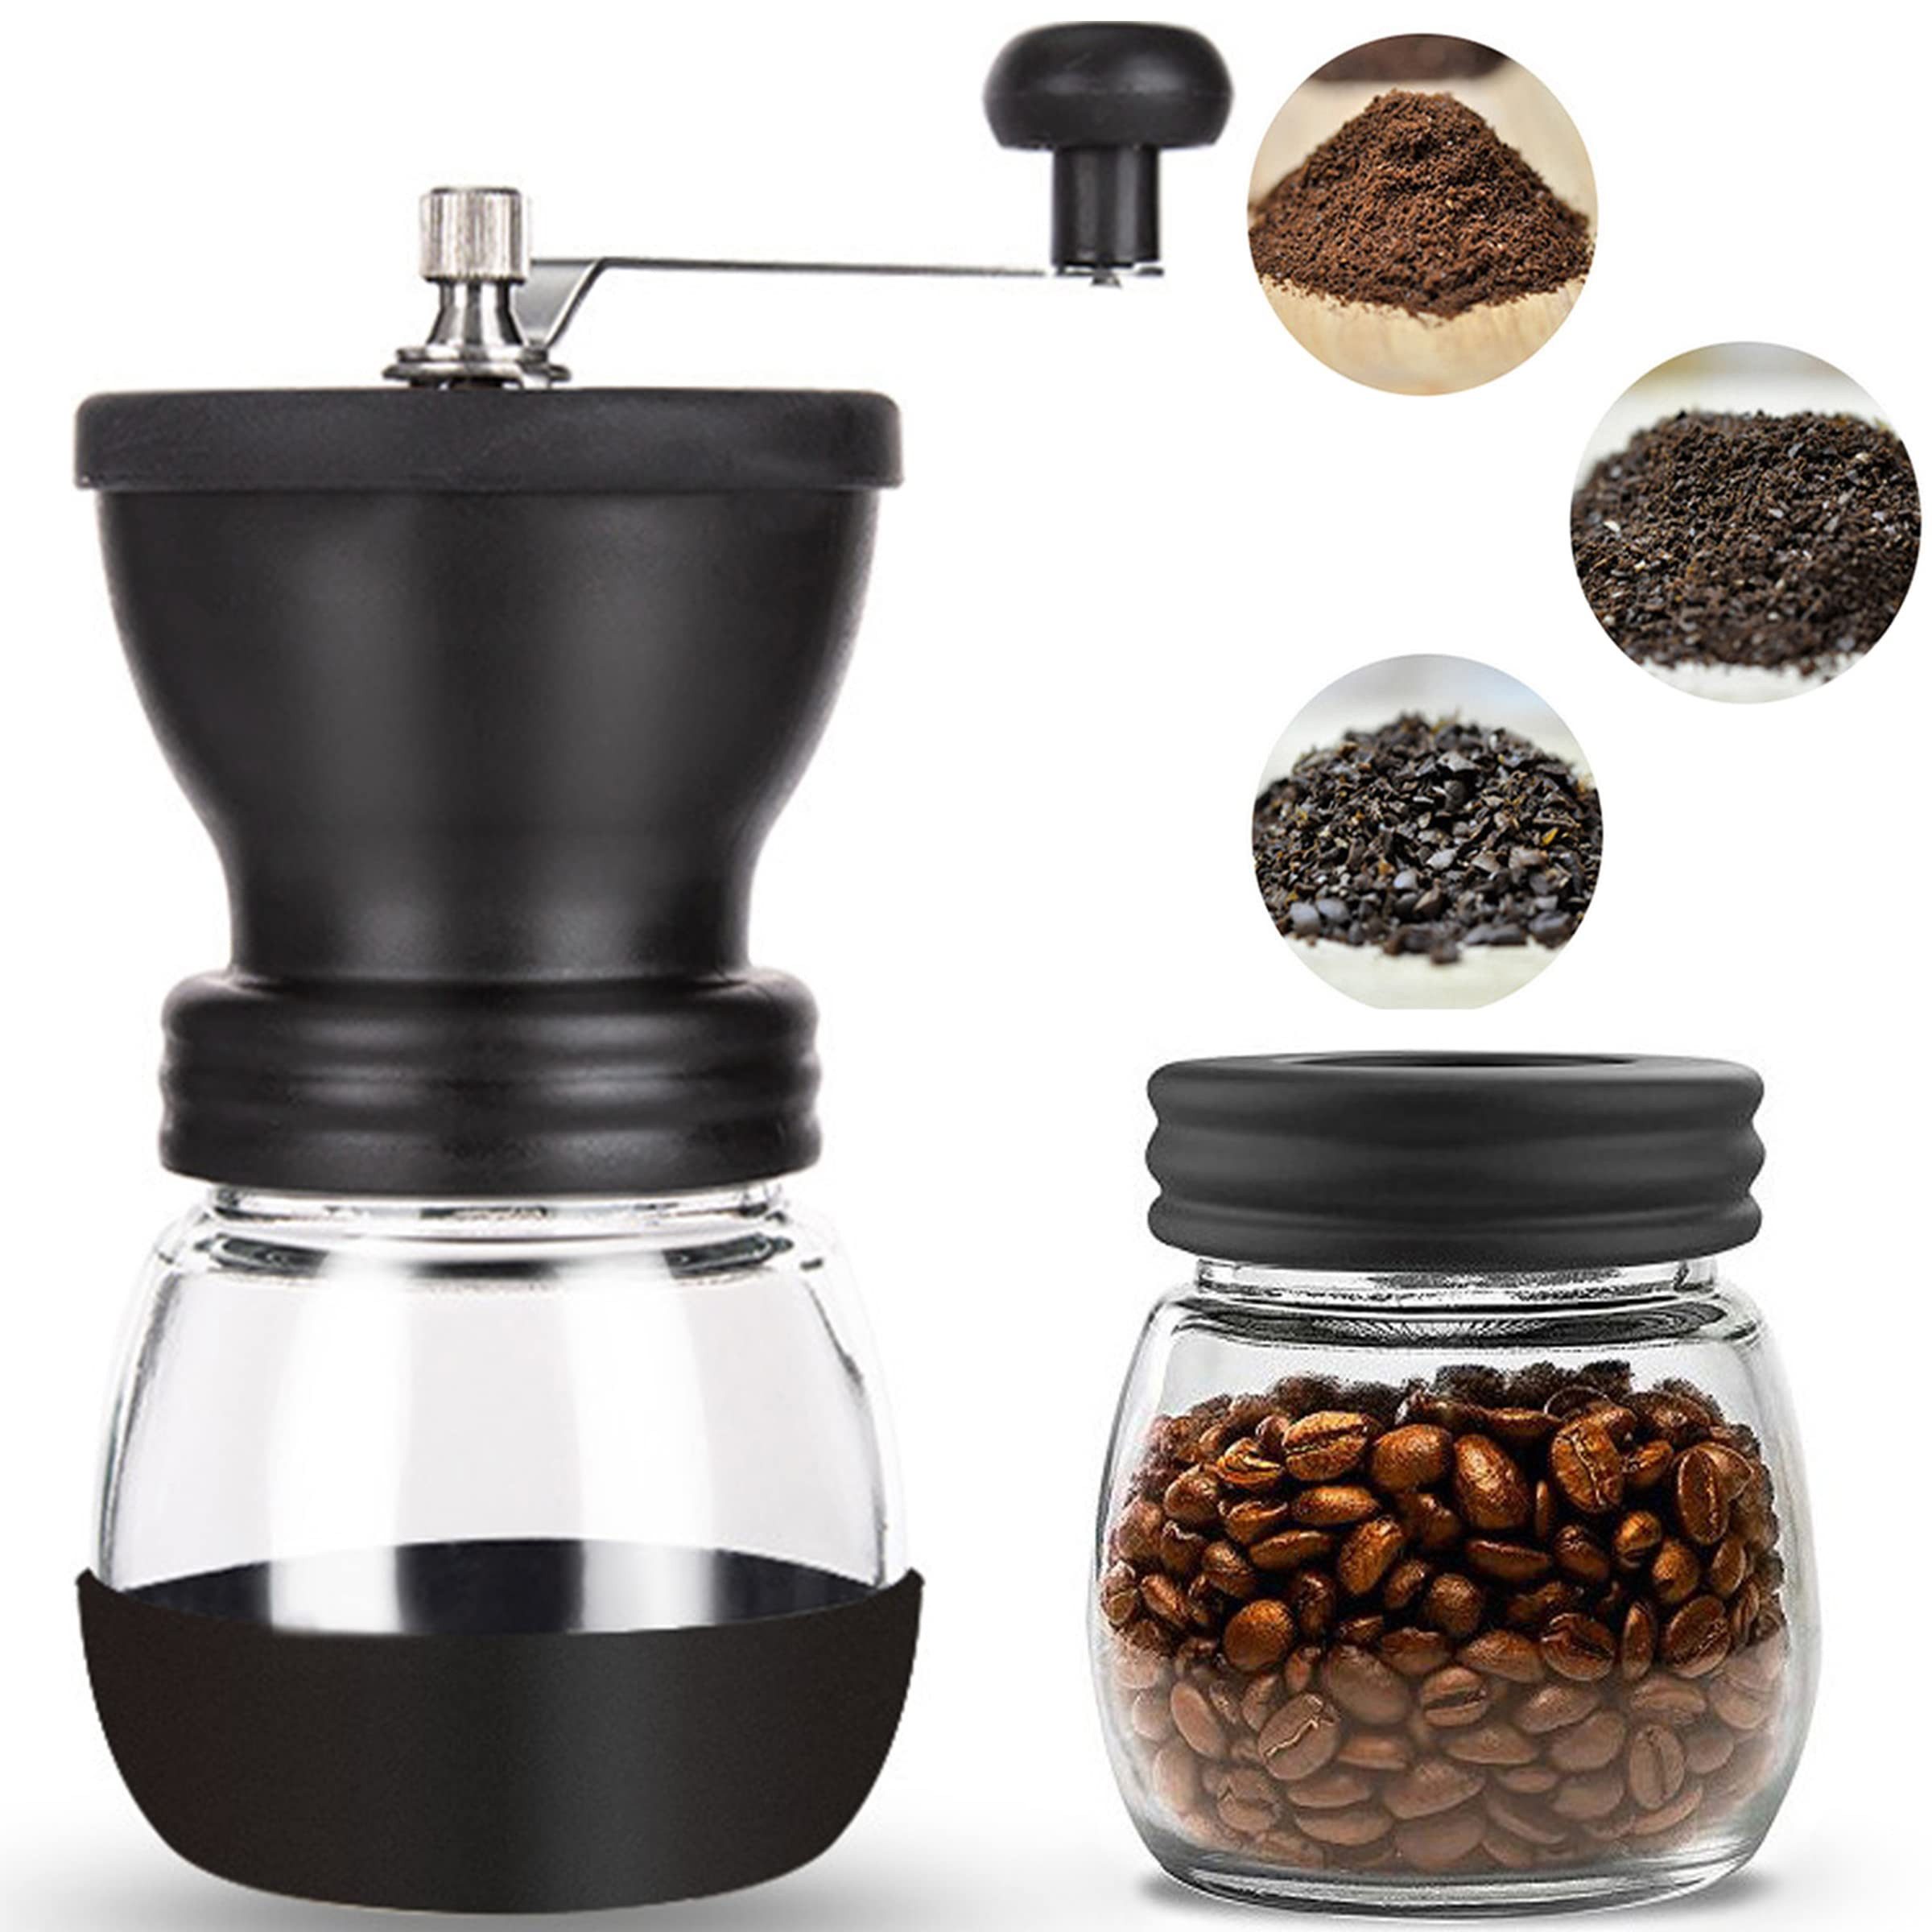 Silberstern Kaffeemühle Manuelle Kaffeemühle mit Bürste, kleine Mühle, tragbare Kaffeemühle, Handgemachte Kaffeebohnenmühle aus Keramik, Handkaffeemühle